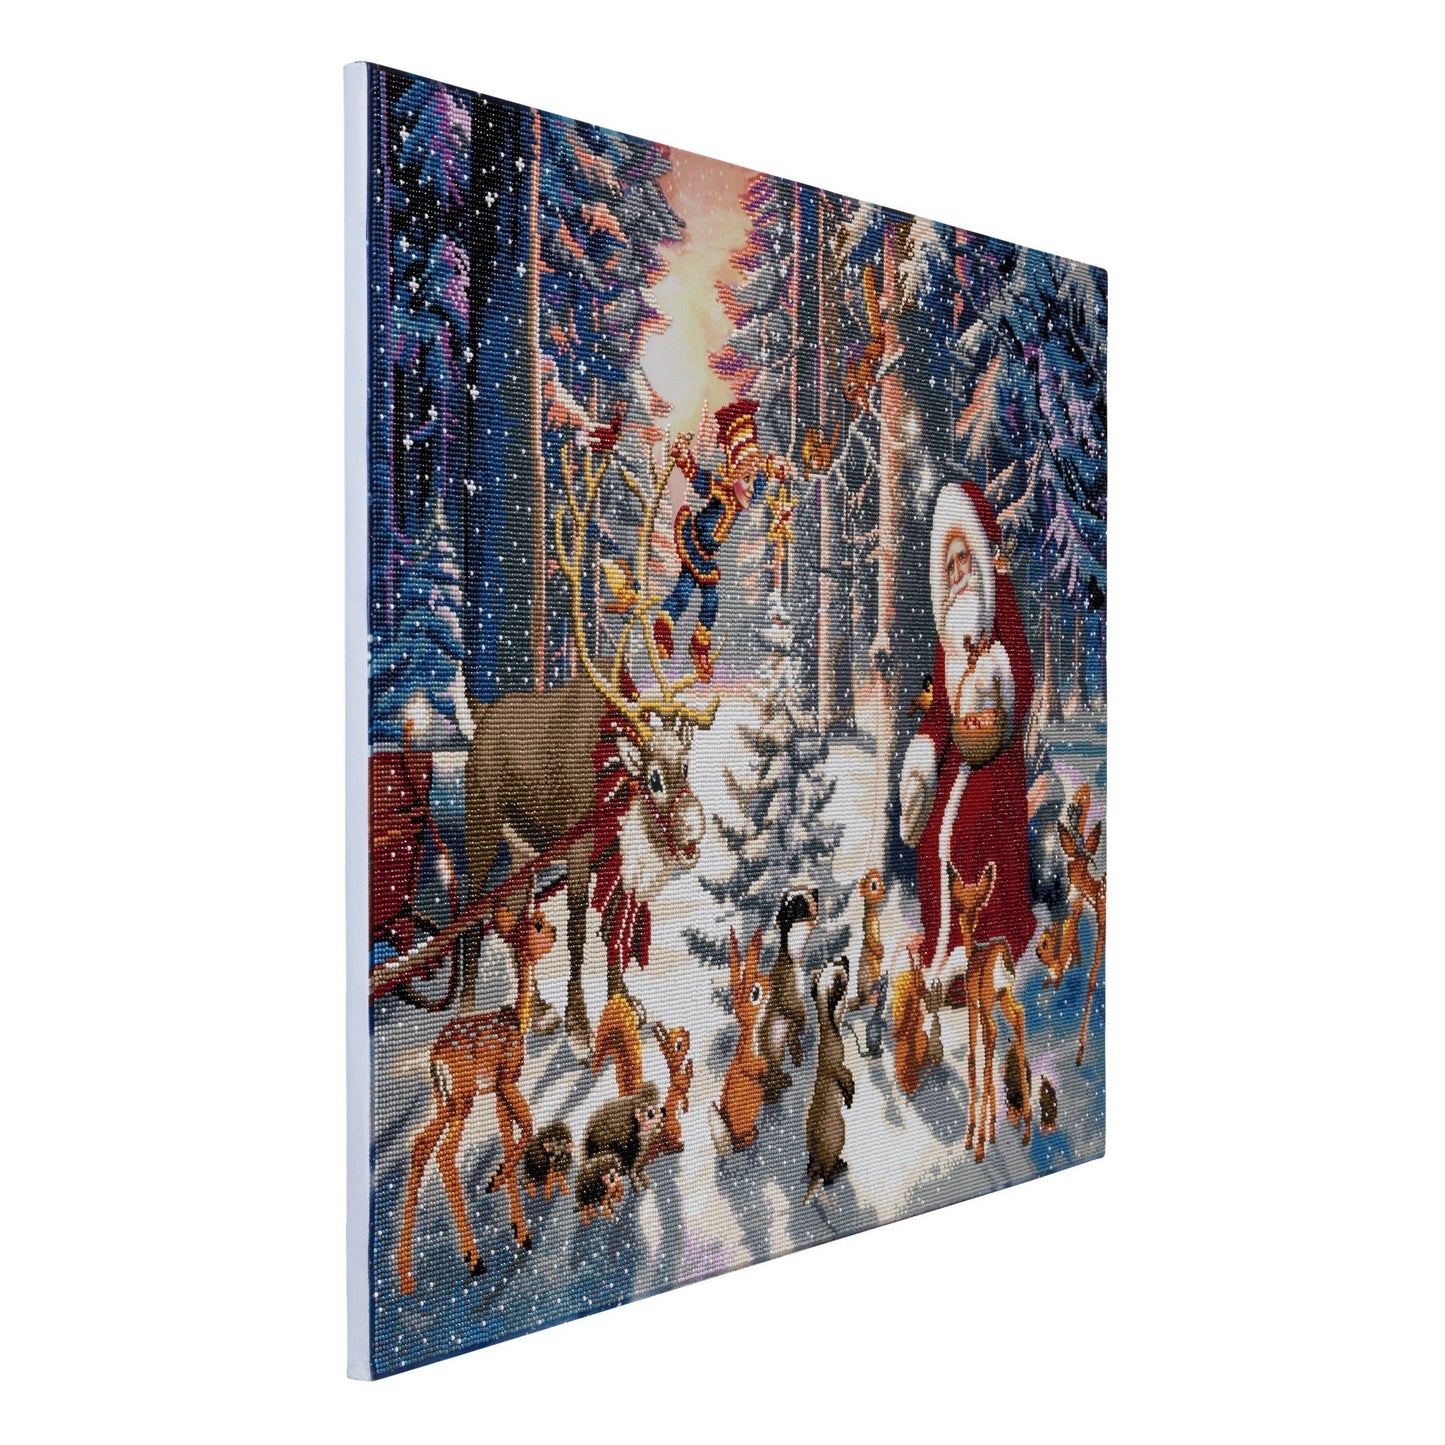 CAK-A54: "Christmas in the Forest" Framed Crystal Art Kit, 90 x 65cm (Giant Kit)